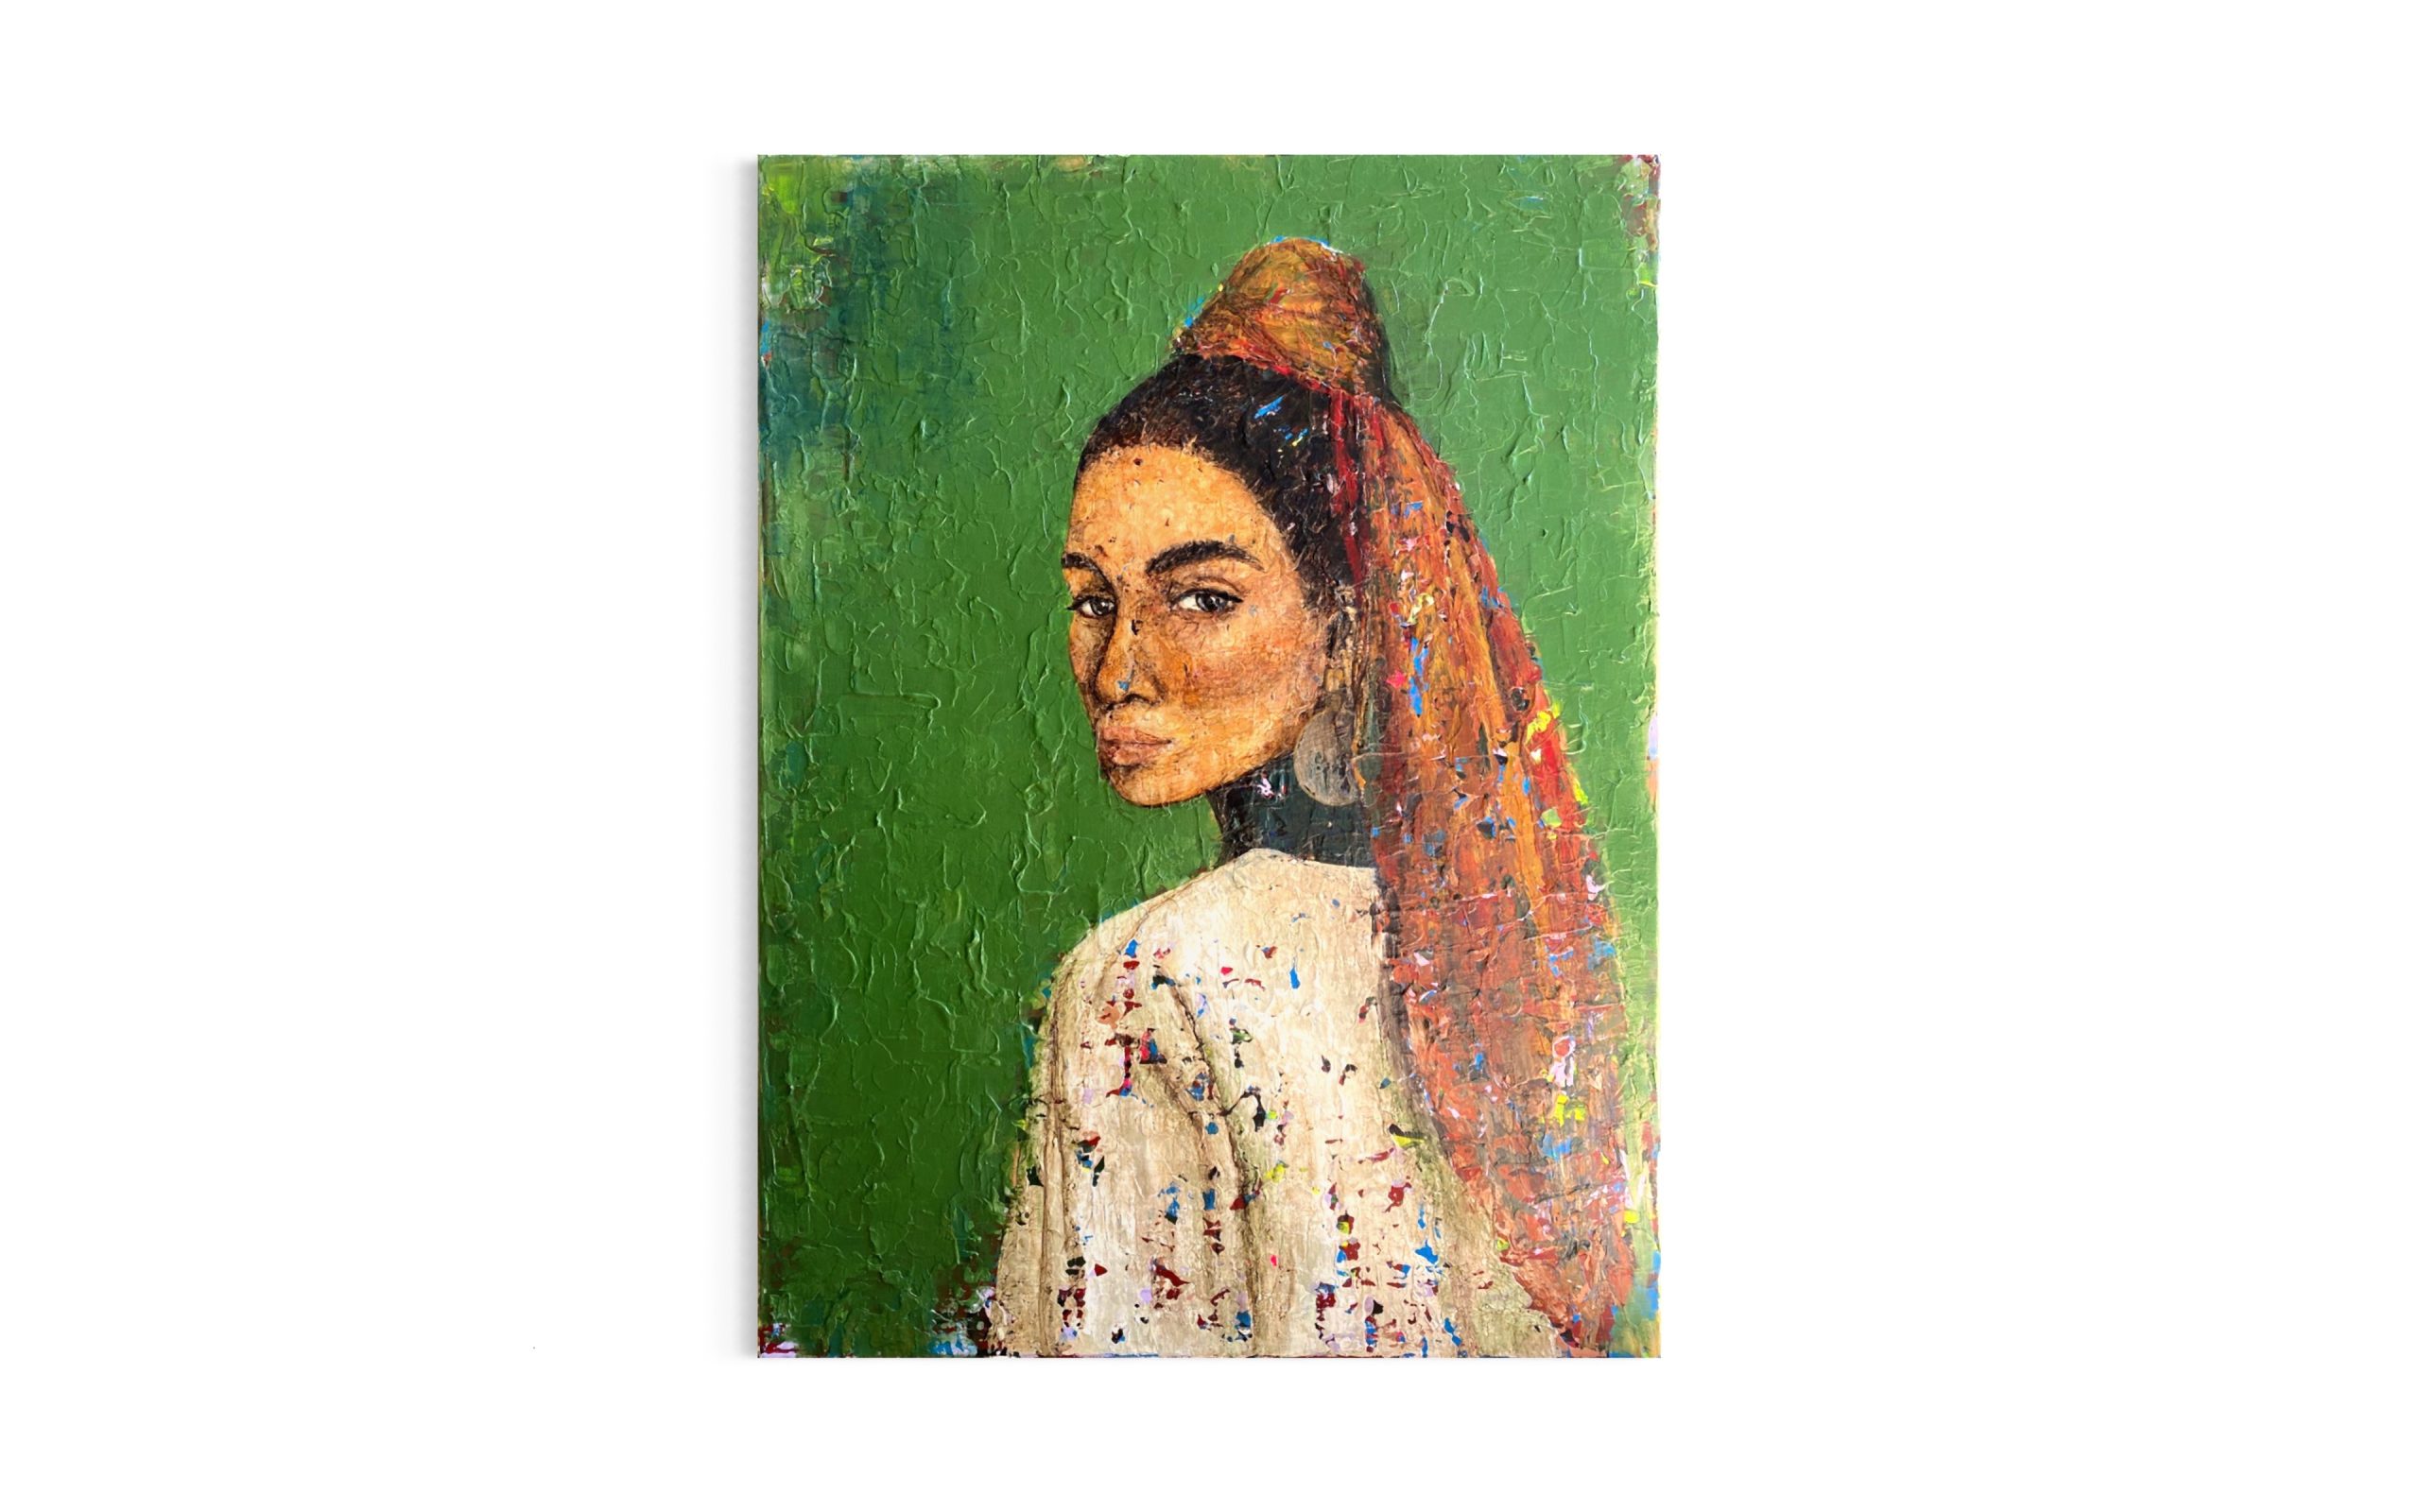 Groent-maleri-af-moerkhaaret-kvinde-med-ryggen-til-og-toerklaede-i-haaret